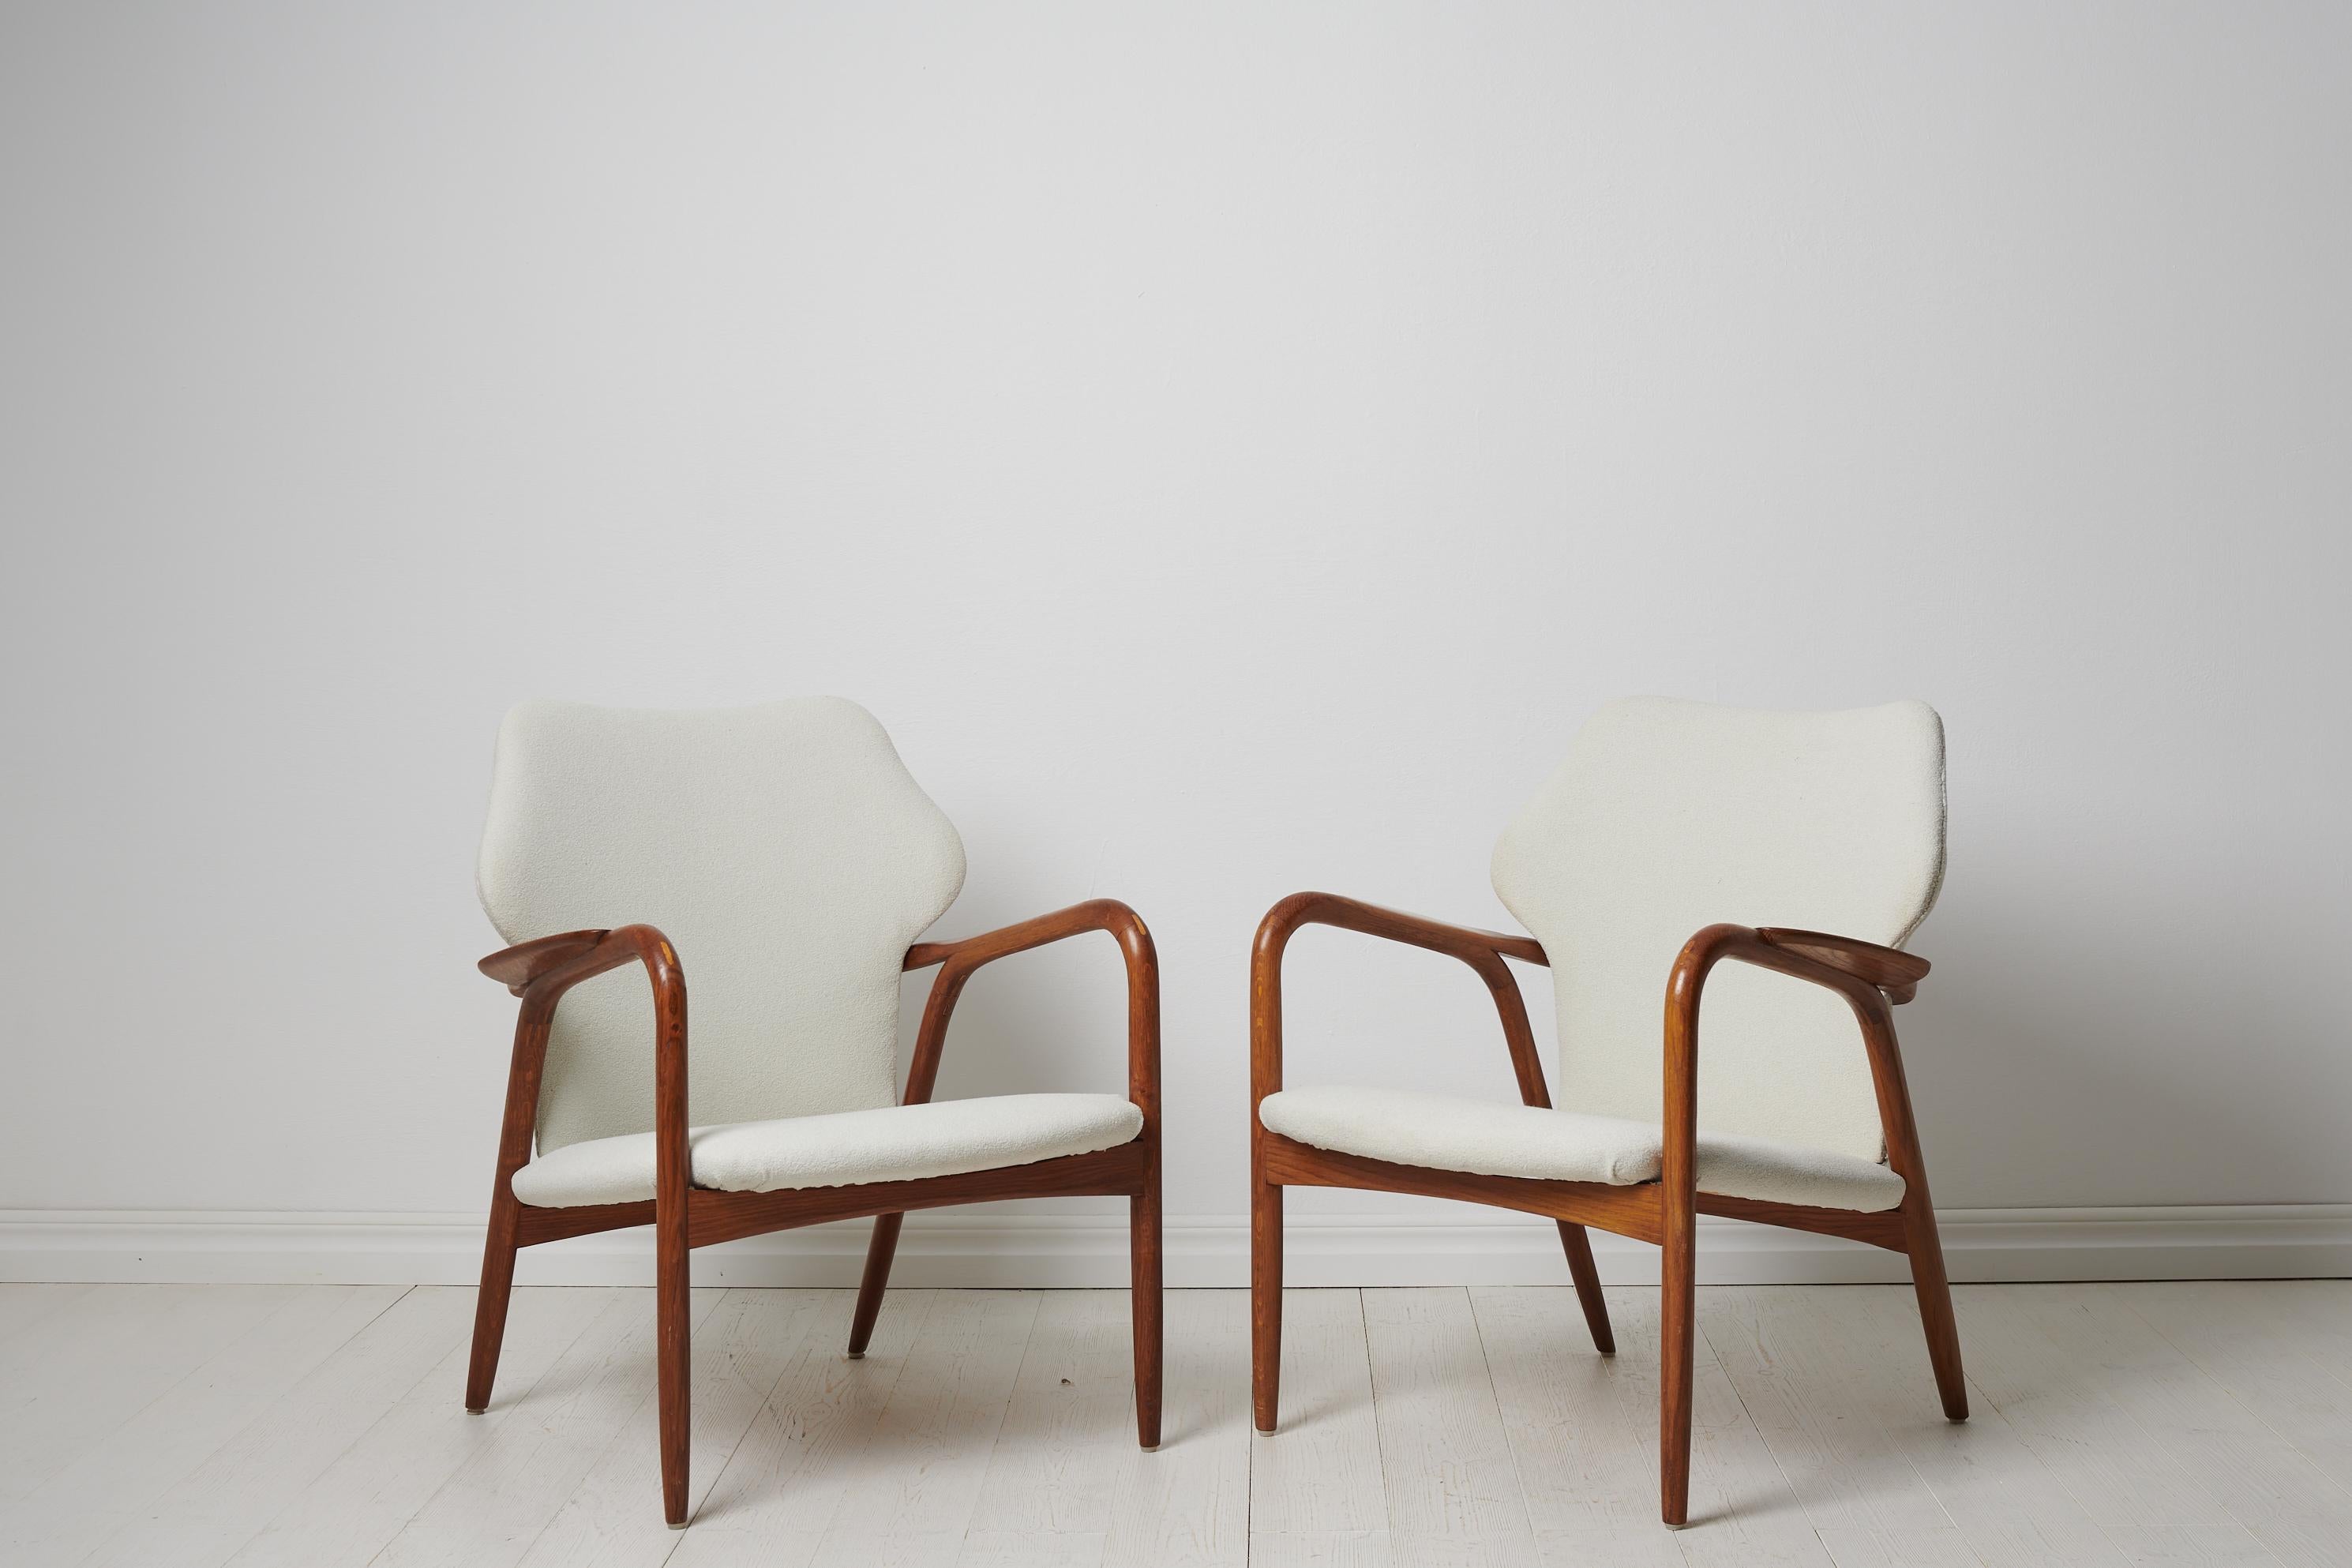 Fauteuils modernes suédois de couleur blanche fabriqués en Suède vers le milieu du XXe siècle, entre 1950 et 1960. La paire est rénovée avec de nouveaux sièges rembourrés. Le cadre est en chêne teinté.